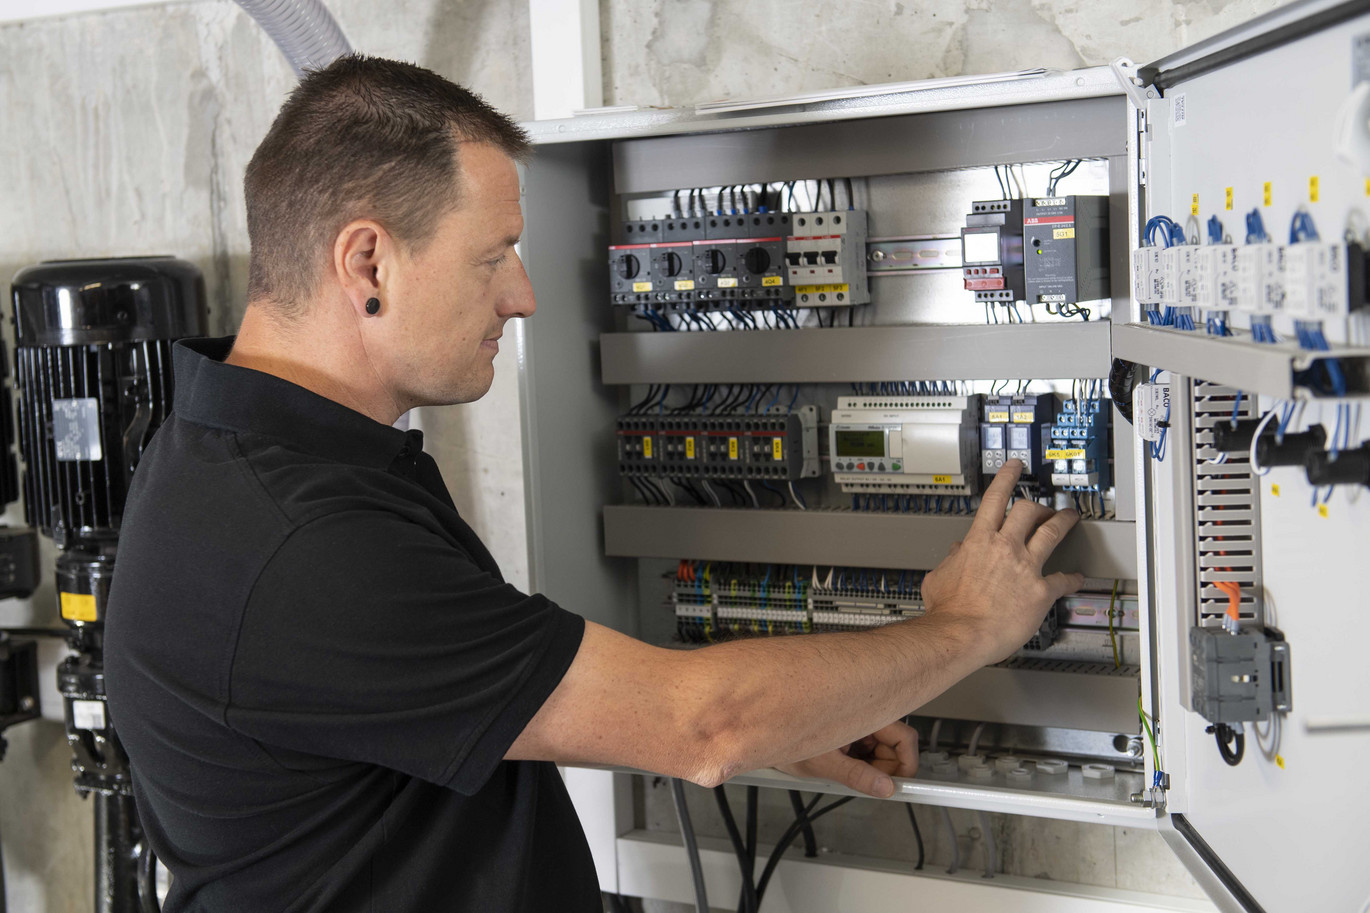 Ein Techniker arbeitet konzentriert an den elektrischen Komponenten eines Schaltschrankes, umgeben von Kabeln und technischen Geräten im Hintergrund